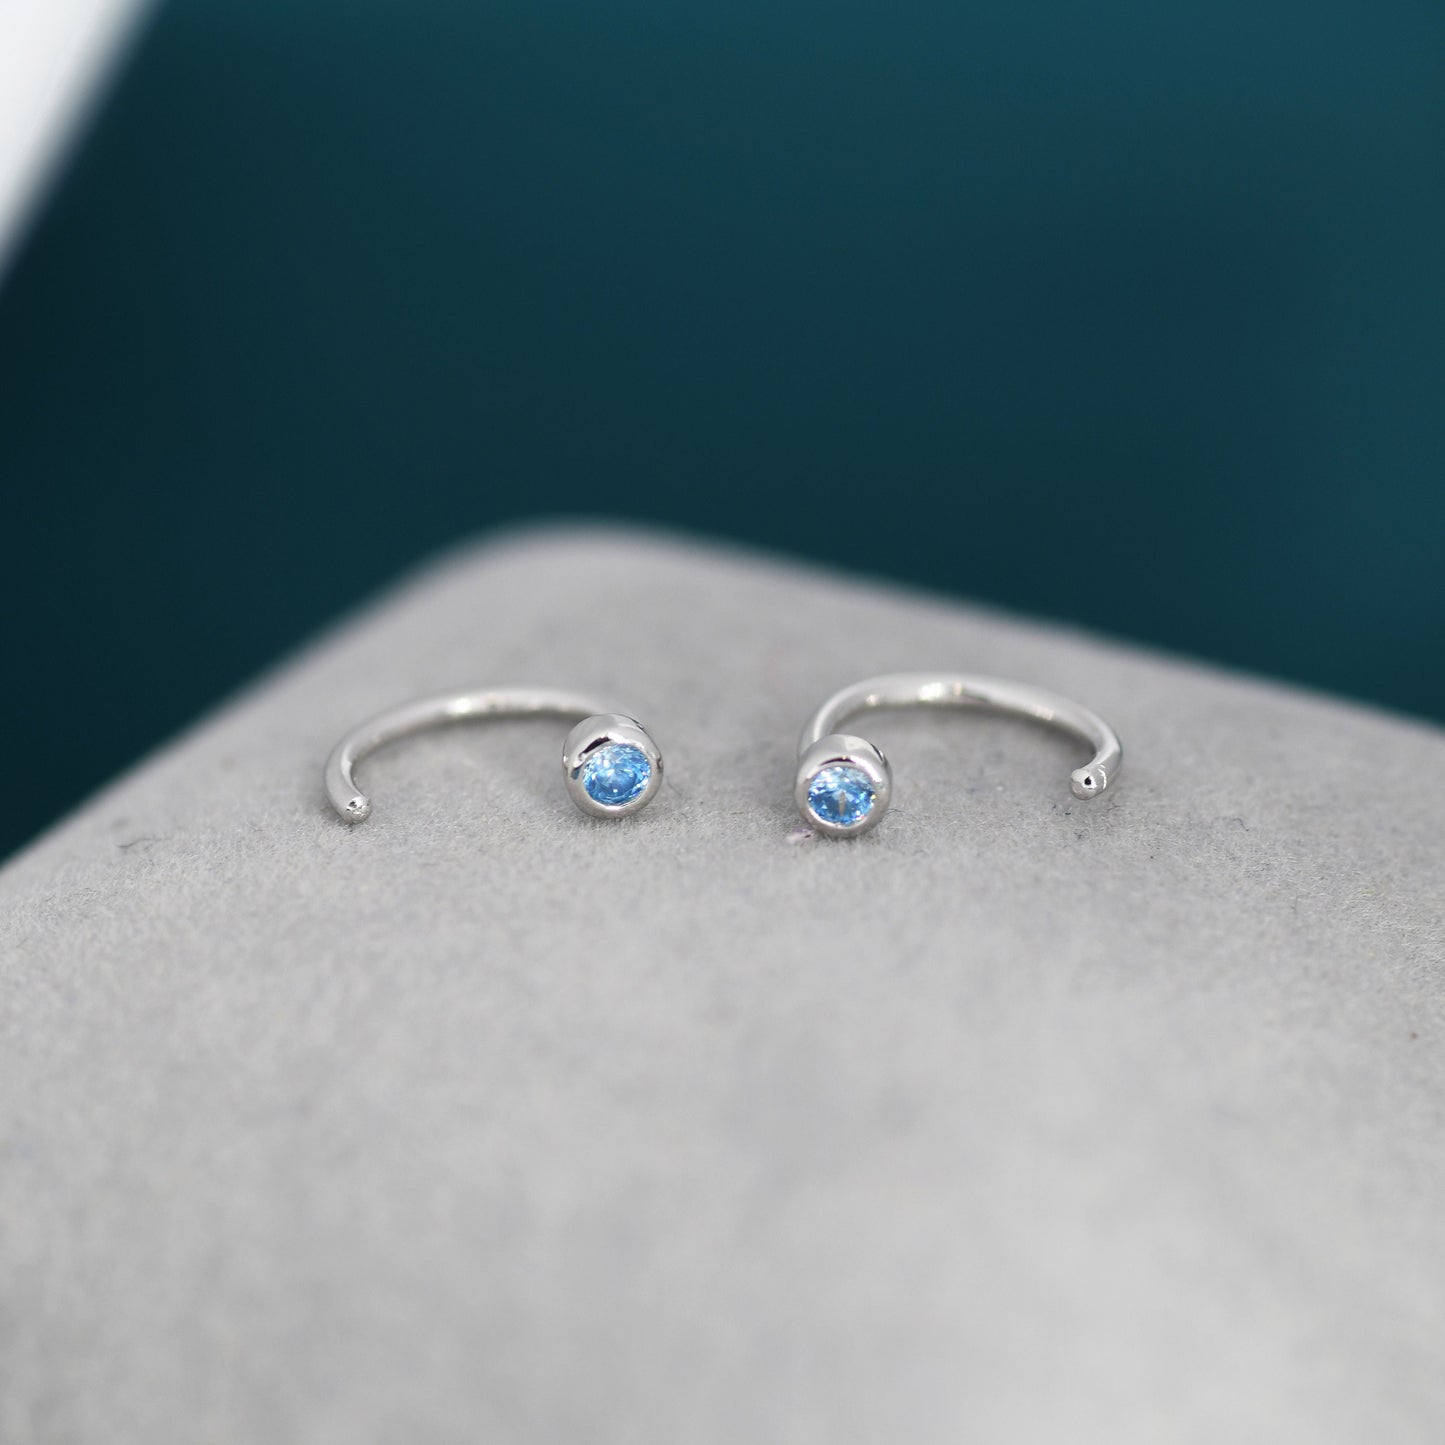 2mm Aquamarine Blue CZ Huggie Hoop Earrings in Sterling Silver, Half Hoop, Open Hoop, Pull Through, Dainty Earrings, March Birthstone